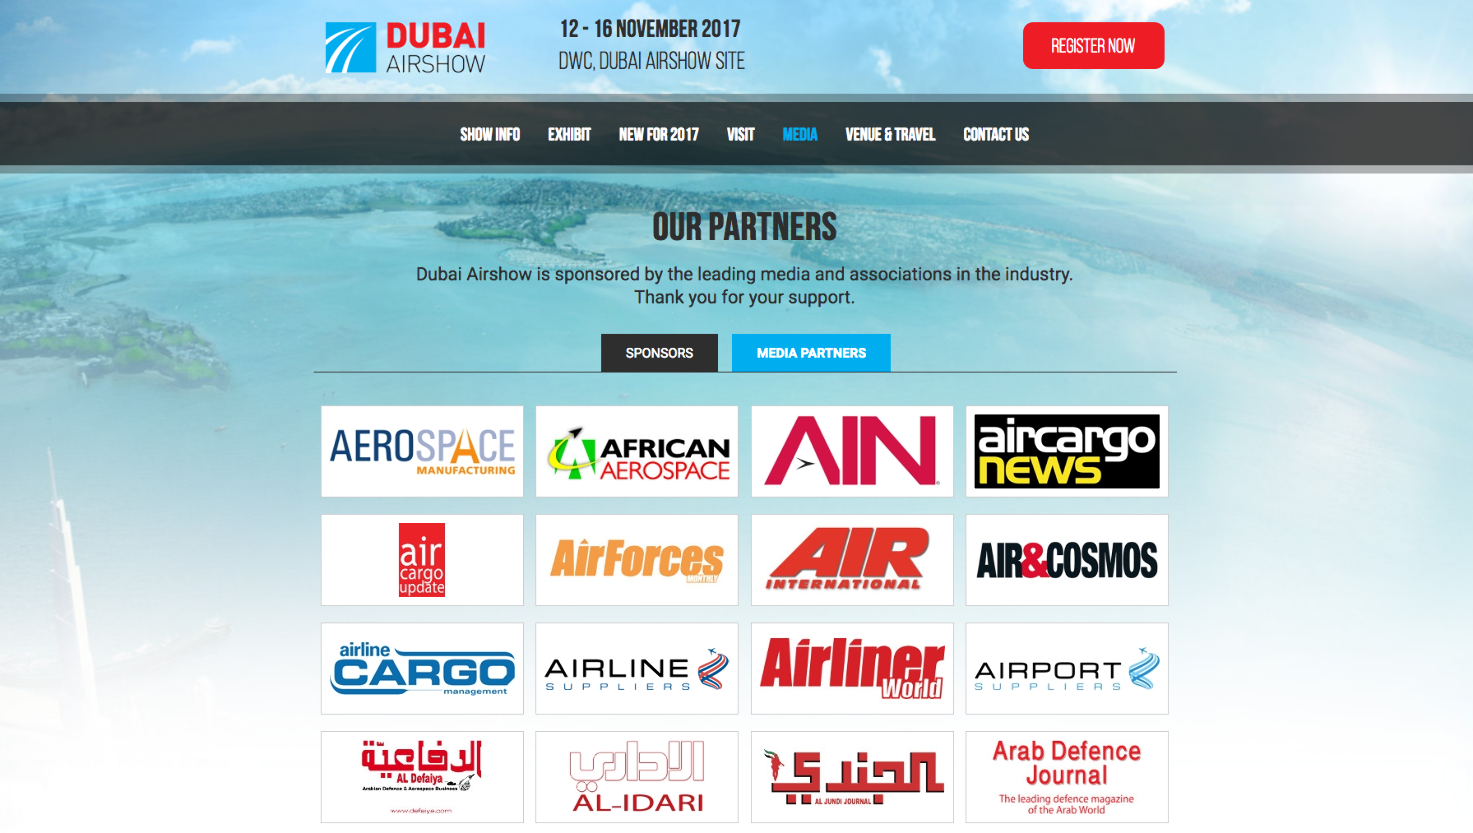 Air&Cosmos couvrira le Dubaï Airshow 2017 du 12 au 16 Novembre.